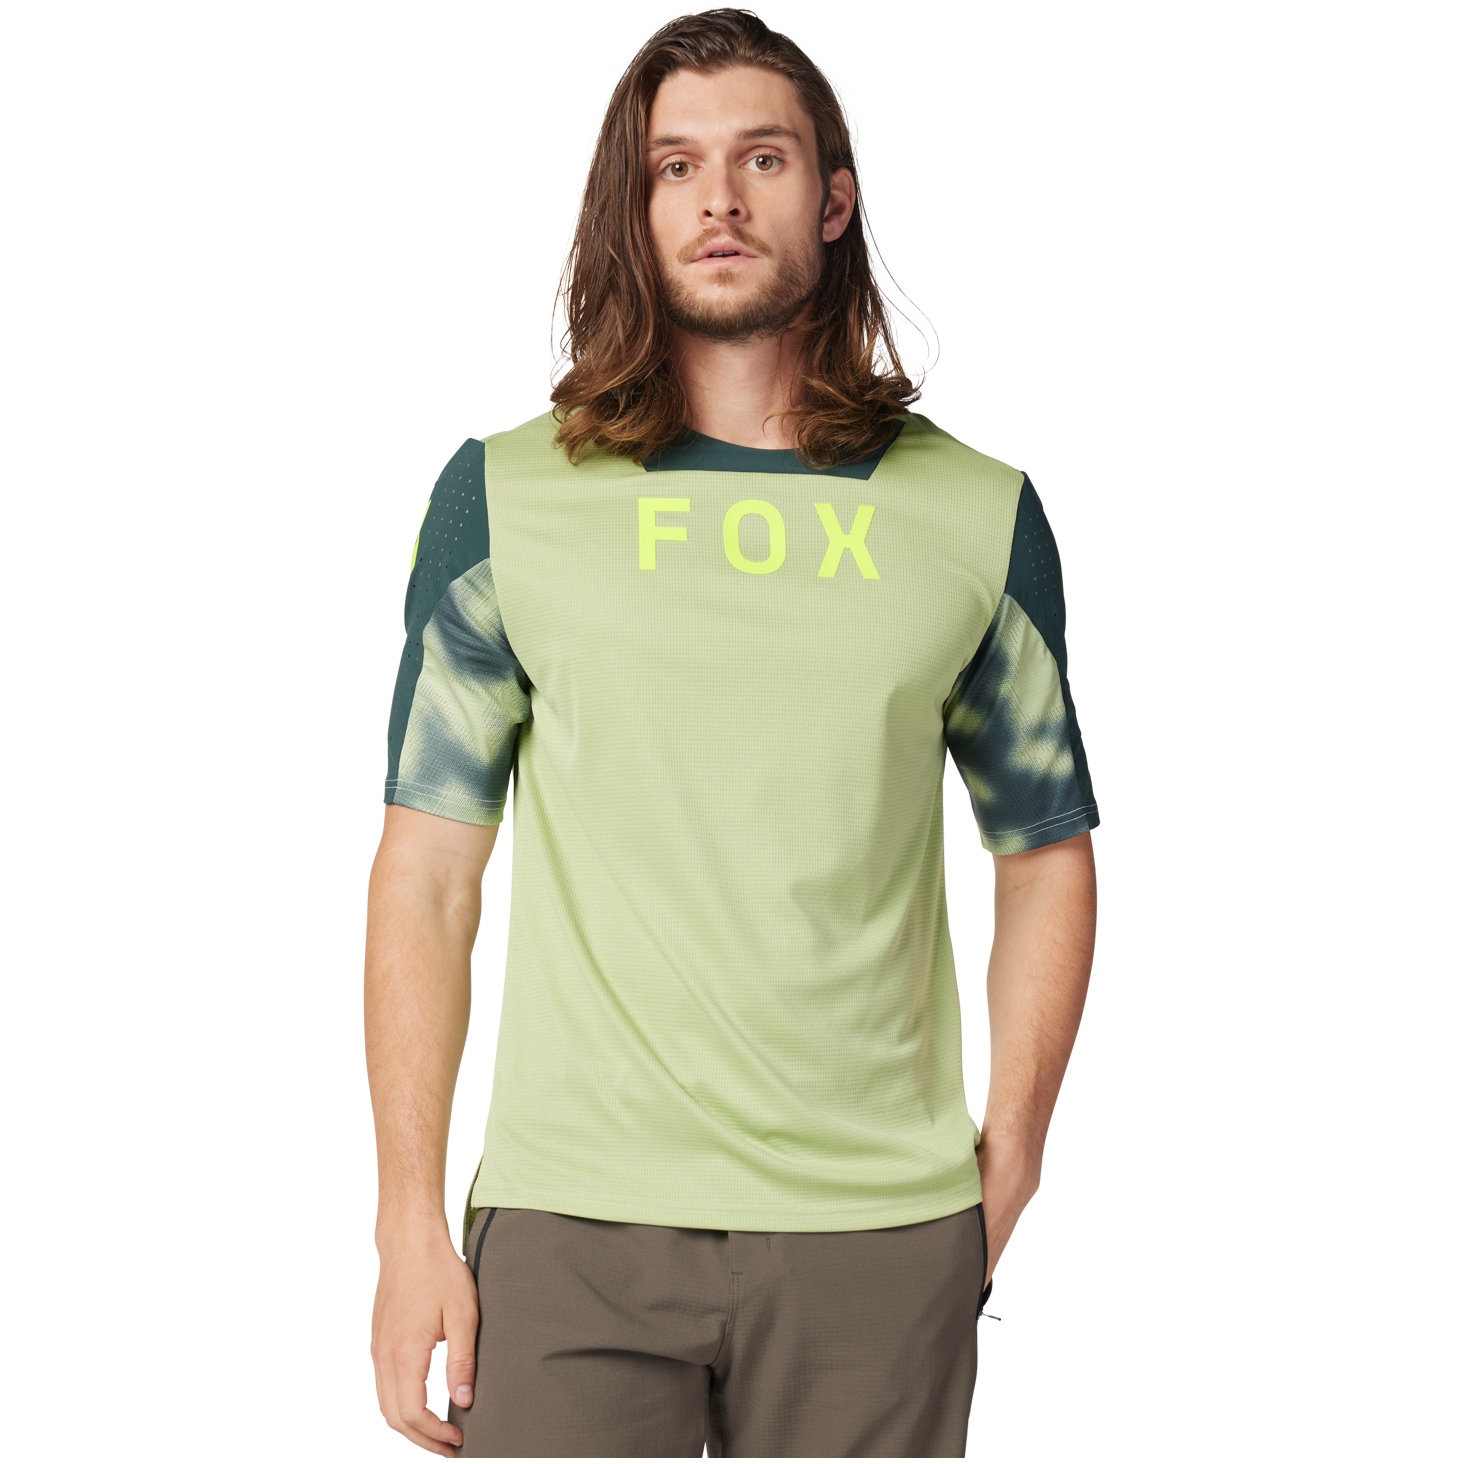 Produktbild von FOX Defend MTB Kurzarmtrikot Herren - Taunt - pale green